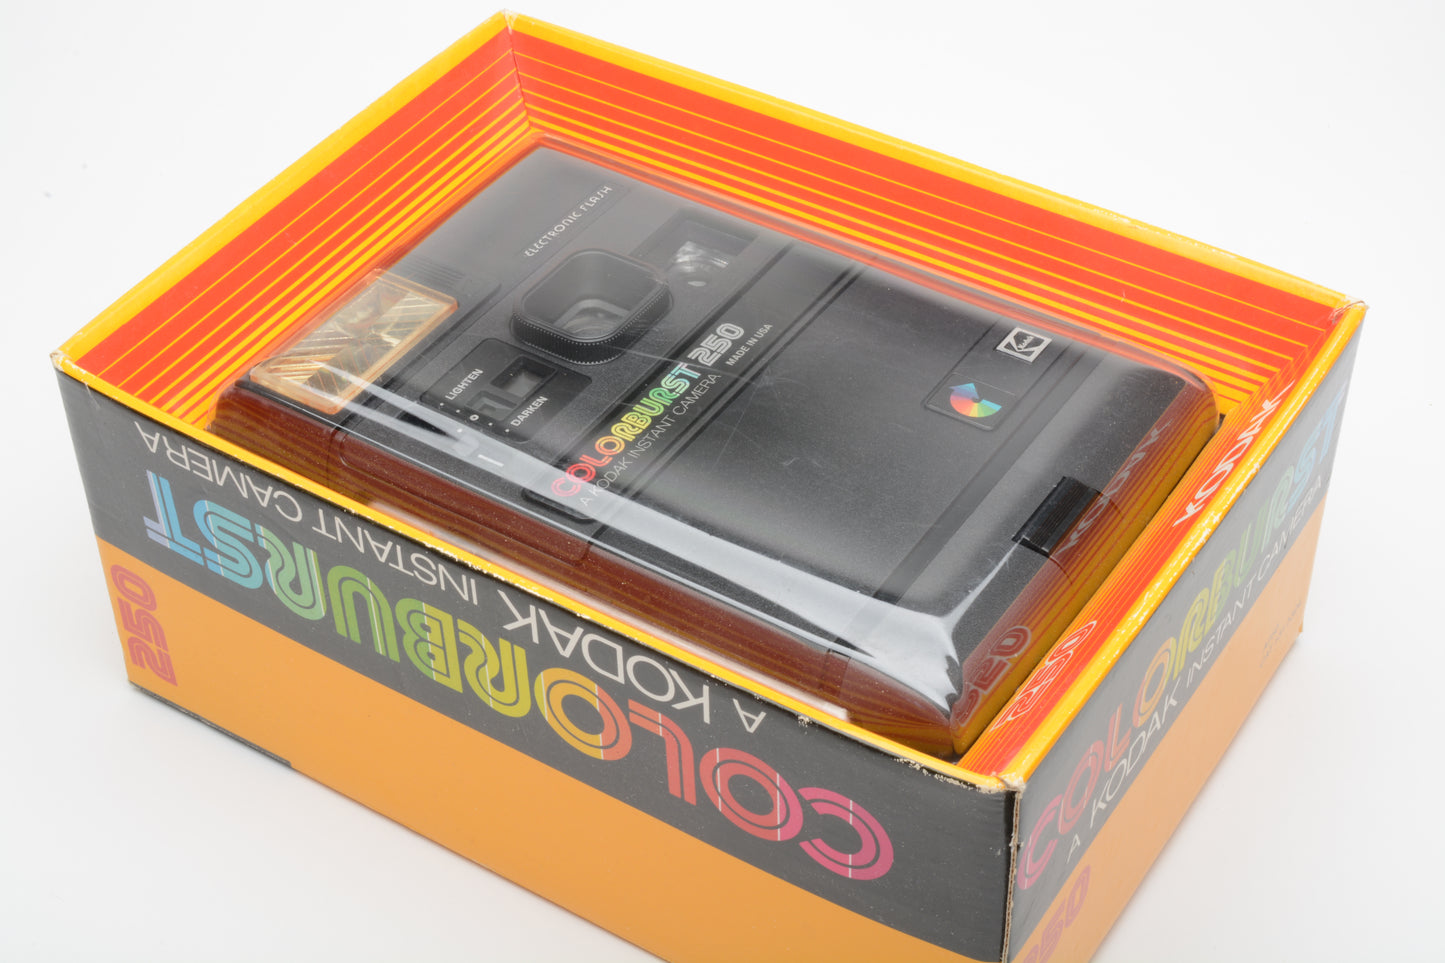 Kodak Colorburst 250 Instant camera, New in Box - Never used - Vintage